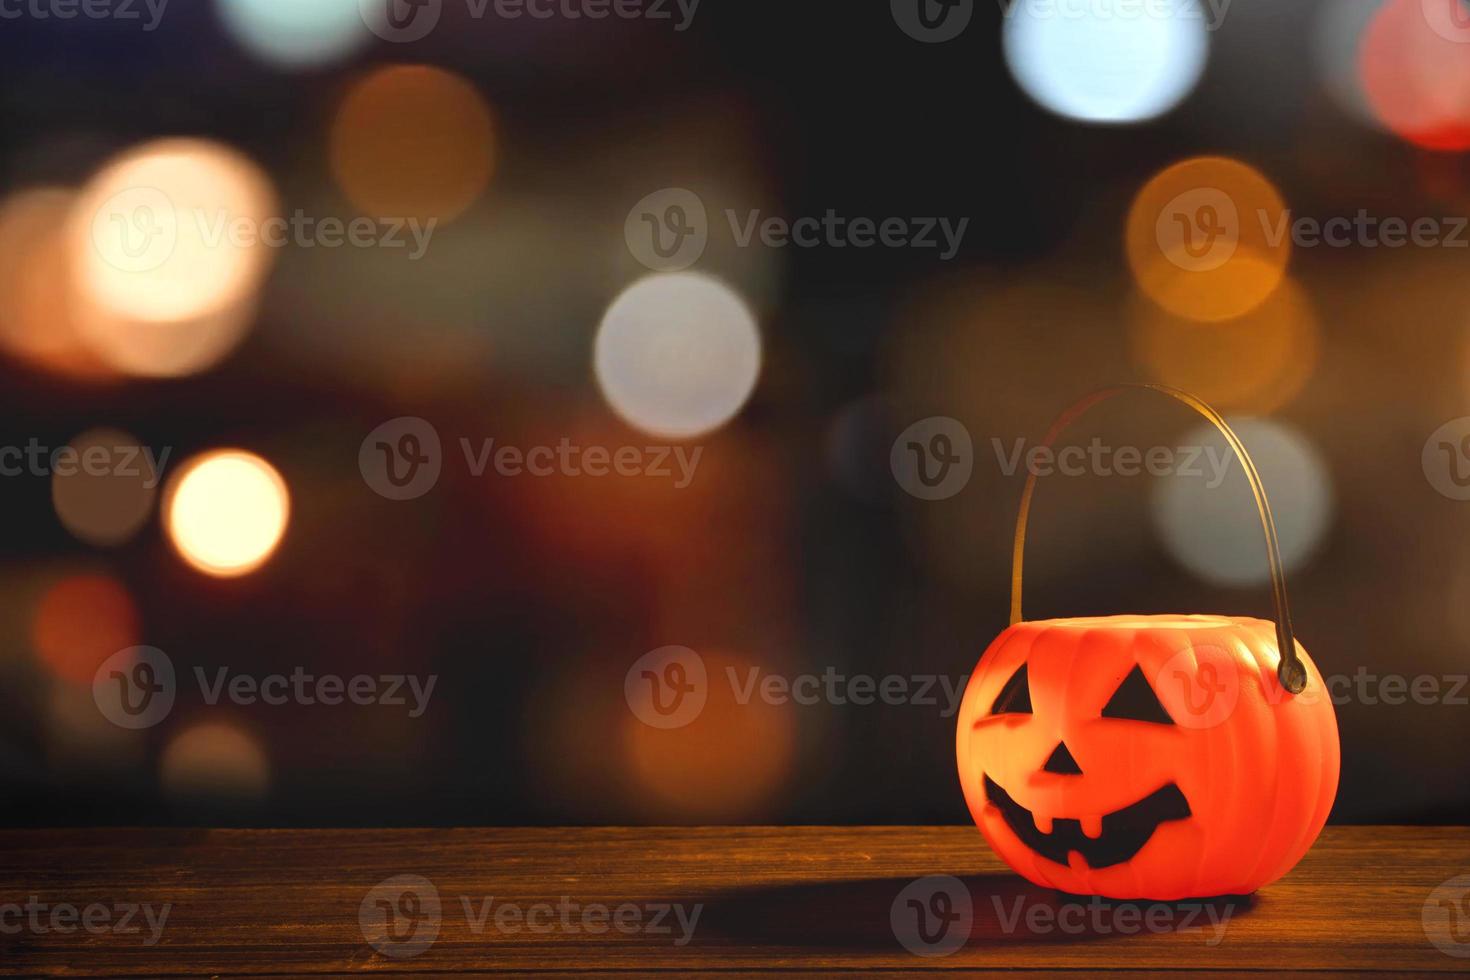 concetto di halloween - lanterna di zucca in plastica arancione su un tavolo di legno scuro con luce scintillante sfocata sullo sfondo, dolcetto o scherzetto, primo piano. foto